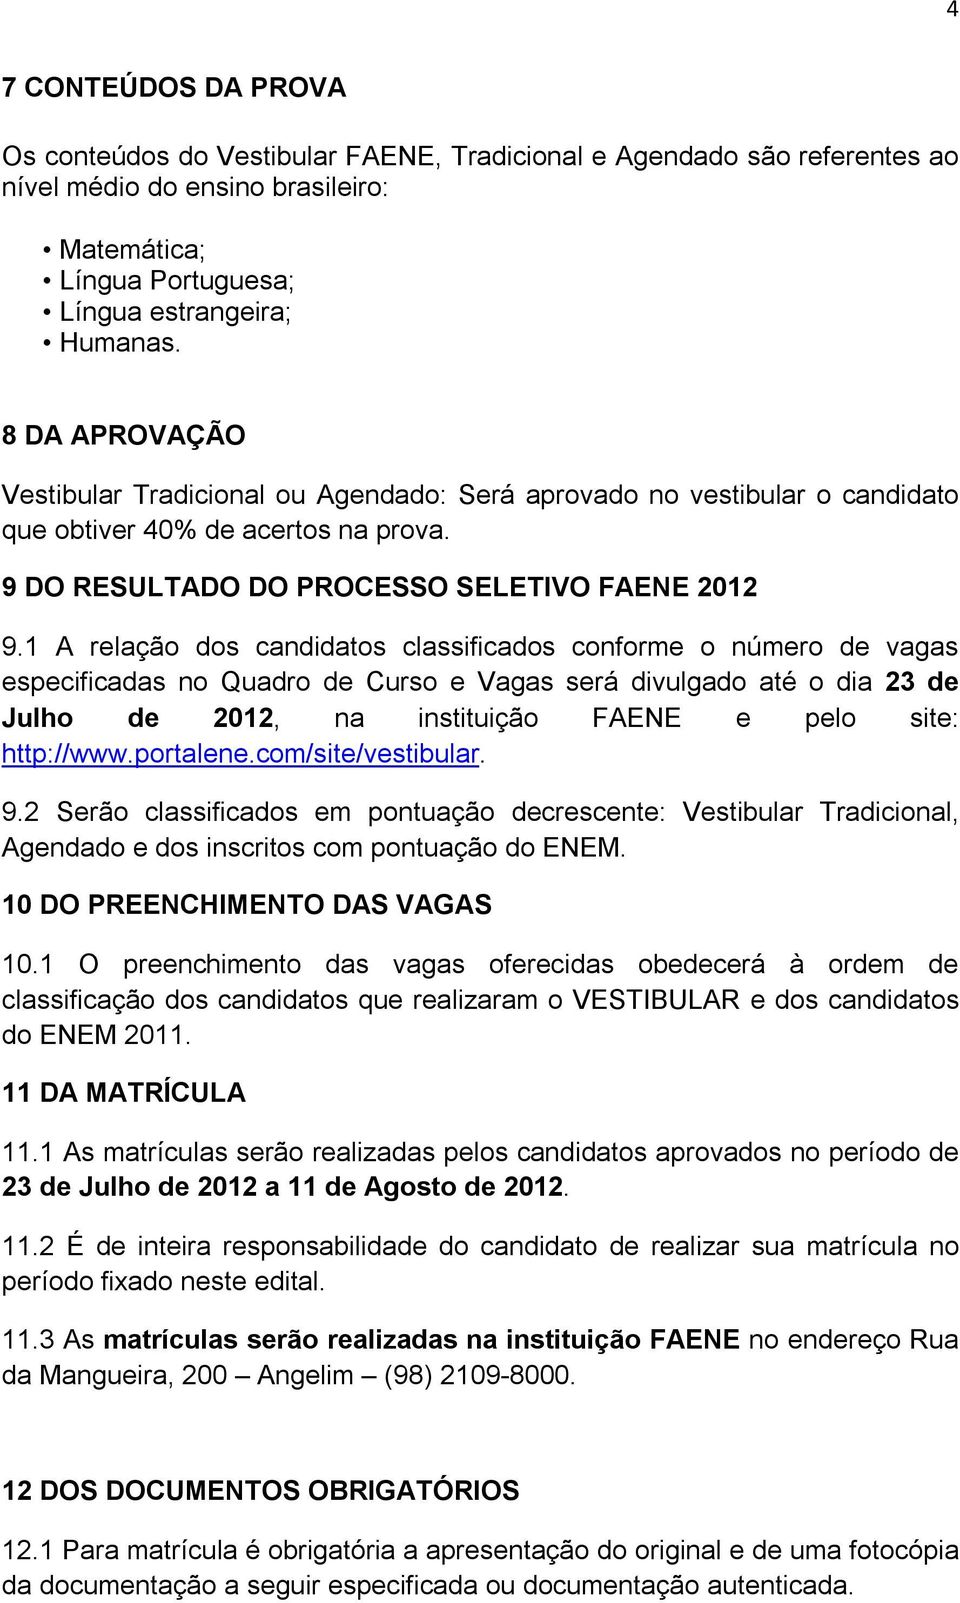 1 A relação dos candidatos classificados conforme o número de vagas especificadas no Quadro de Curso e Vagas será divulgado até o dia 23 de Julho de 2012, na instituição FAENE e pelo site: http://www.